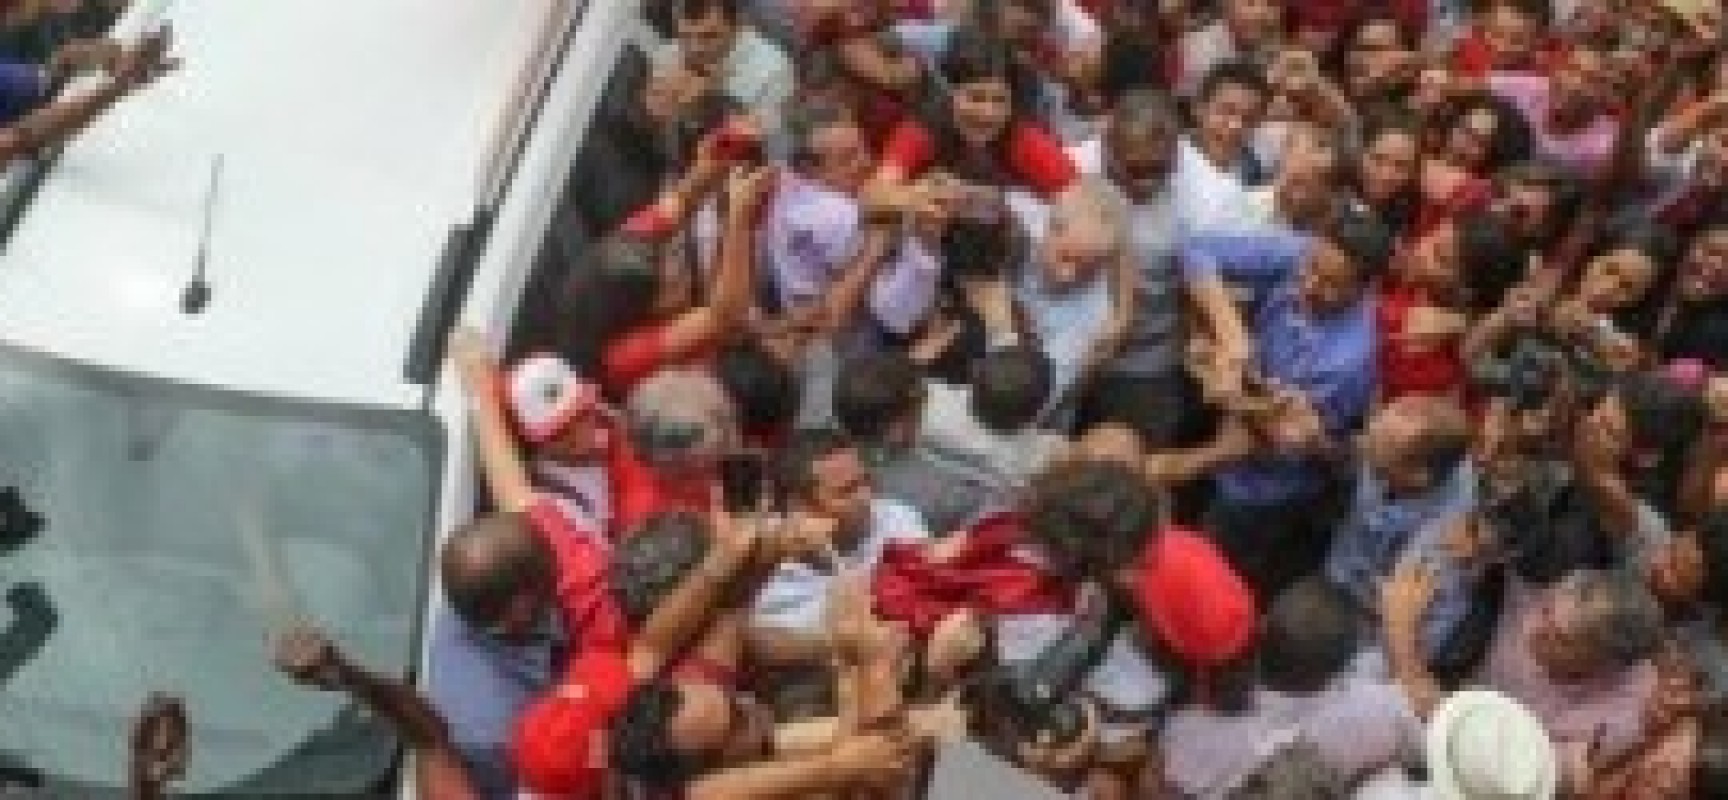 “Meu maior legado foi levar os mais pobres à universidade”, diz Lula